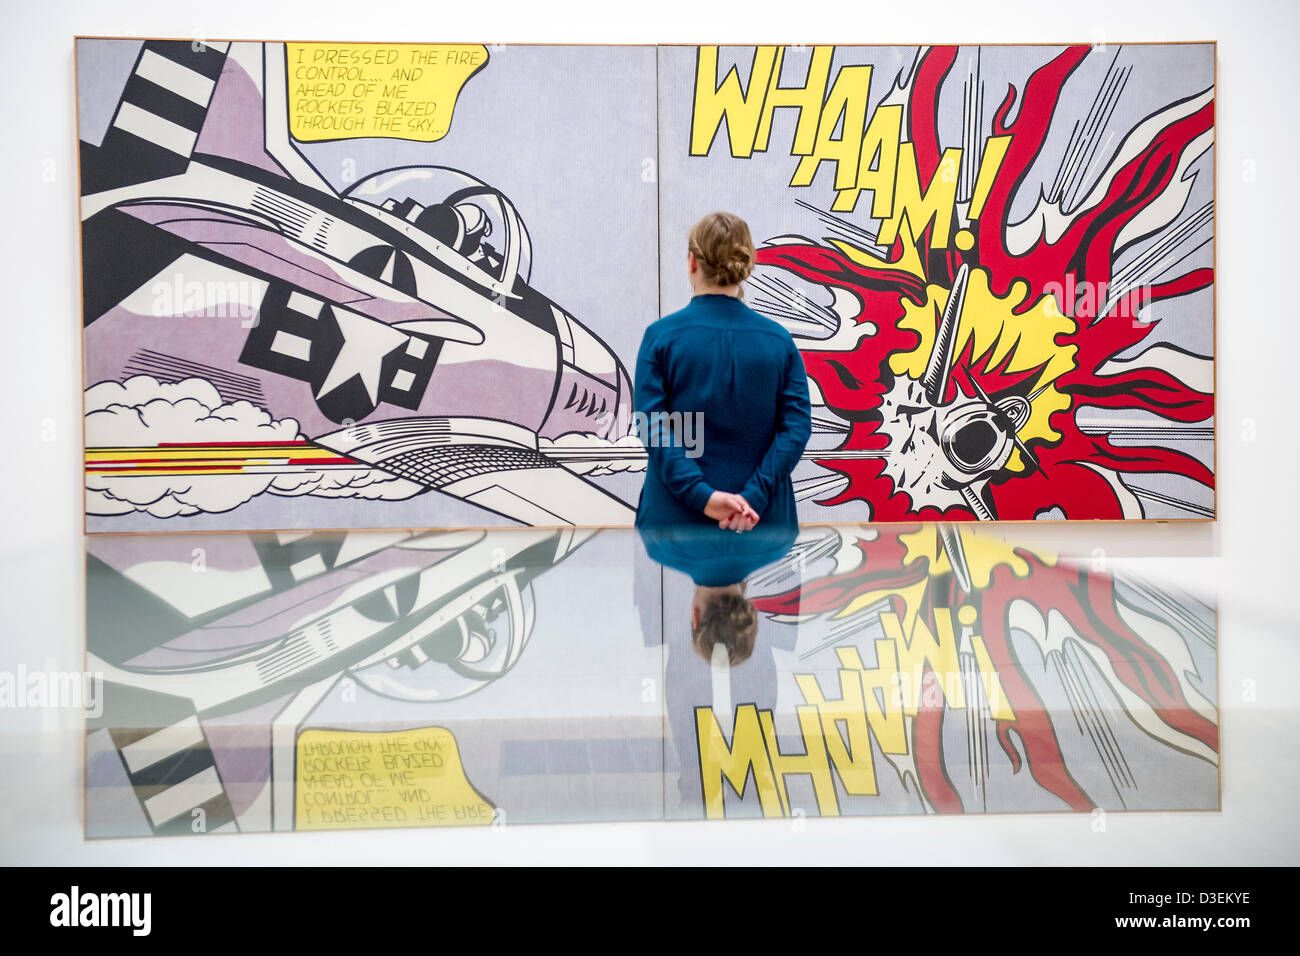 La Tate Modern di Londra, Regno Unito. Il 18 febbraio 2013. Whaam, ispirato da un libro a fumetti. Roy Lichtenstein, una delle più famose figure in Pop Art, è esposta alla Tate Modern. Questa è la prima grande retrospettiva di Lichtenstein di lavoro in venti anni e riunisce oltre 100 l'artista più iconica dipinti. La mostra si svolgerà dal 21 febbraio al 27 maggio 2013 ed è sponsorizzato da Bank of America Merrill Lynch. Tate Modern, London, Regno Unito 18 Febbraio 2013. Credito: comprare campana/Alamy Live News Foto Stock